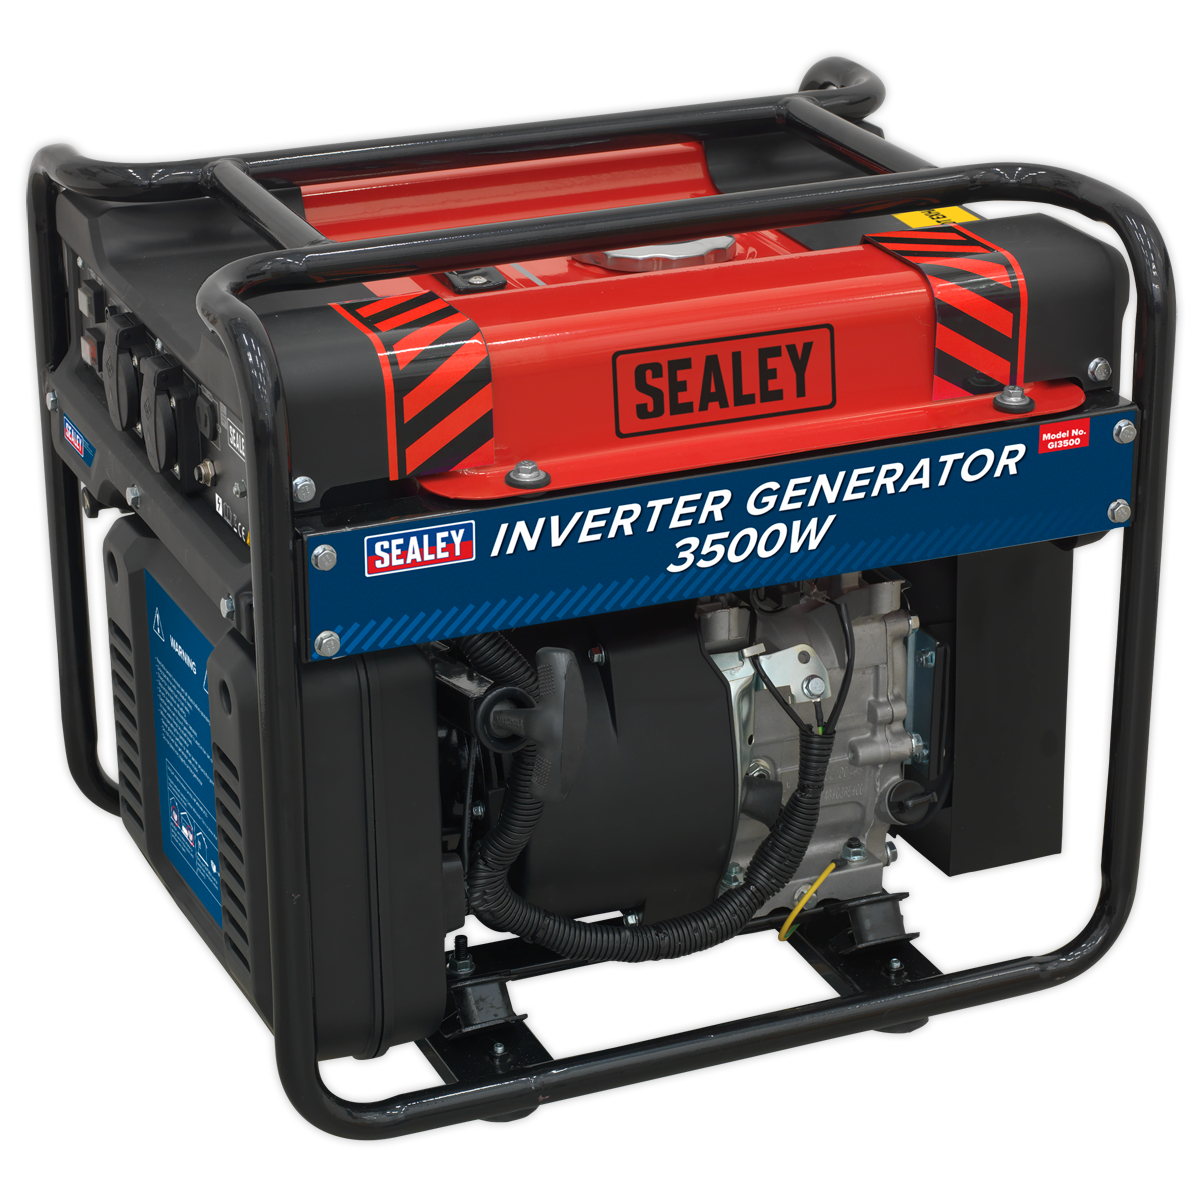 Sealey Inverter Generator 3500W 230V 4-Stroke Engine